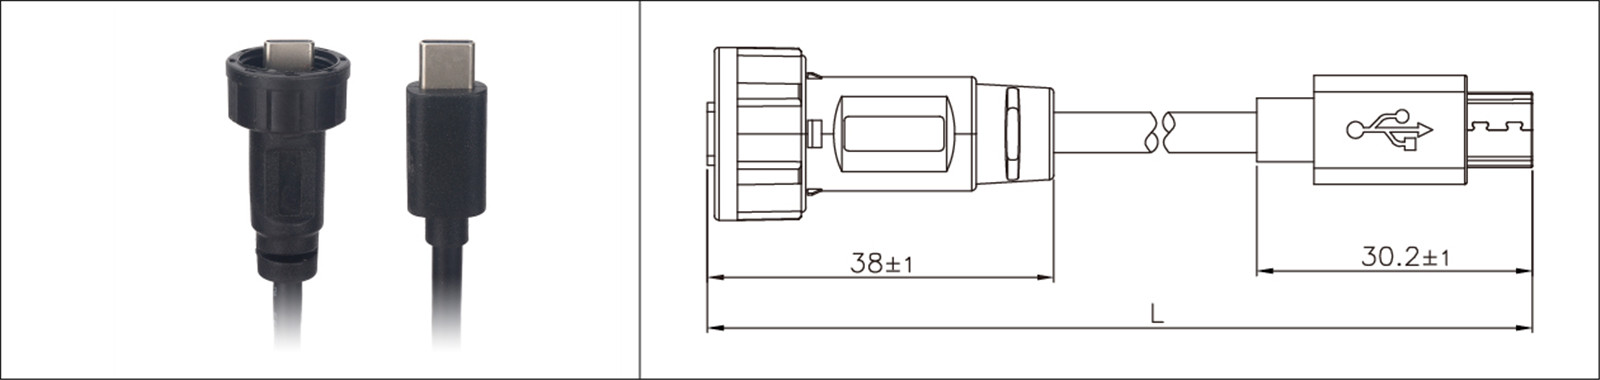 Micro USB վահանակի ամրացման տեսակ 2.0 3.0 իգական և արական անջրանցիկ IP67 overmold երկարացման մալուխ արդյունաբերական միակցիչ-02 (14)